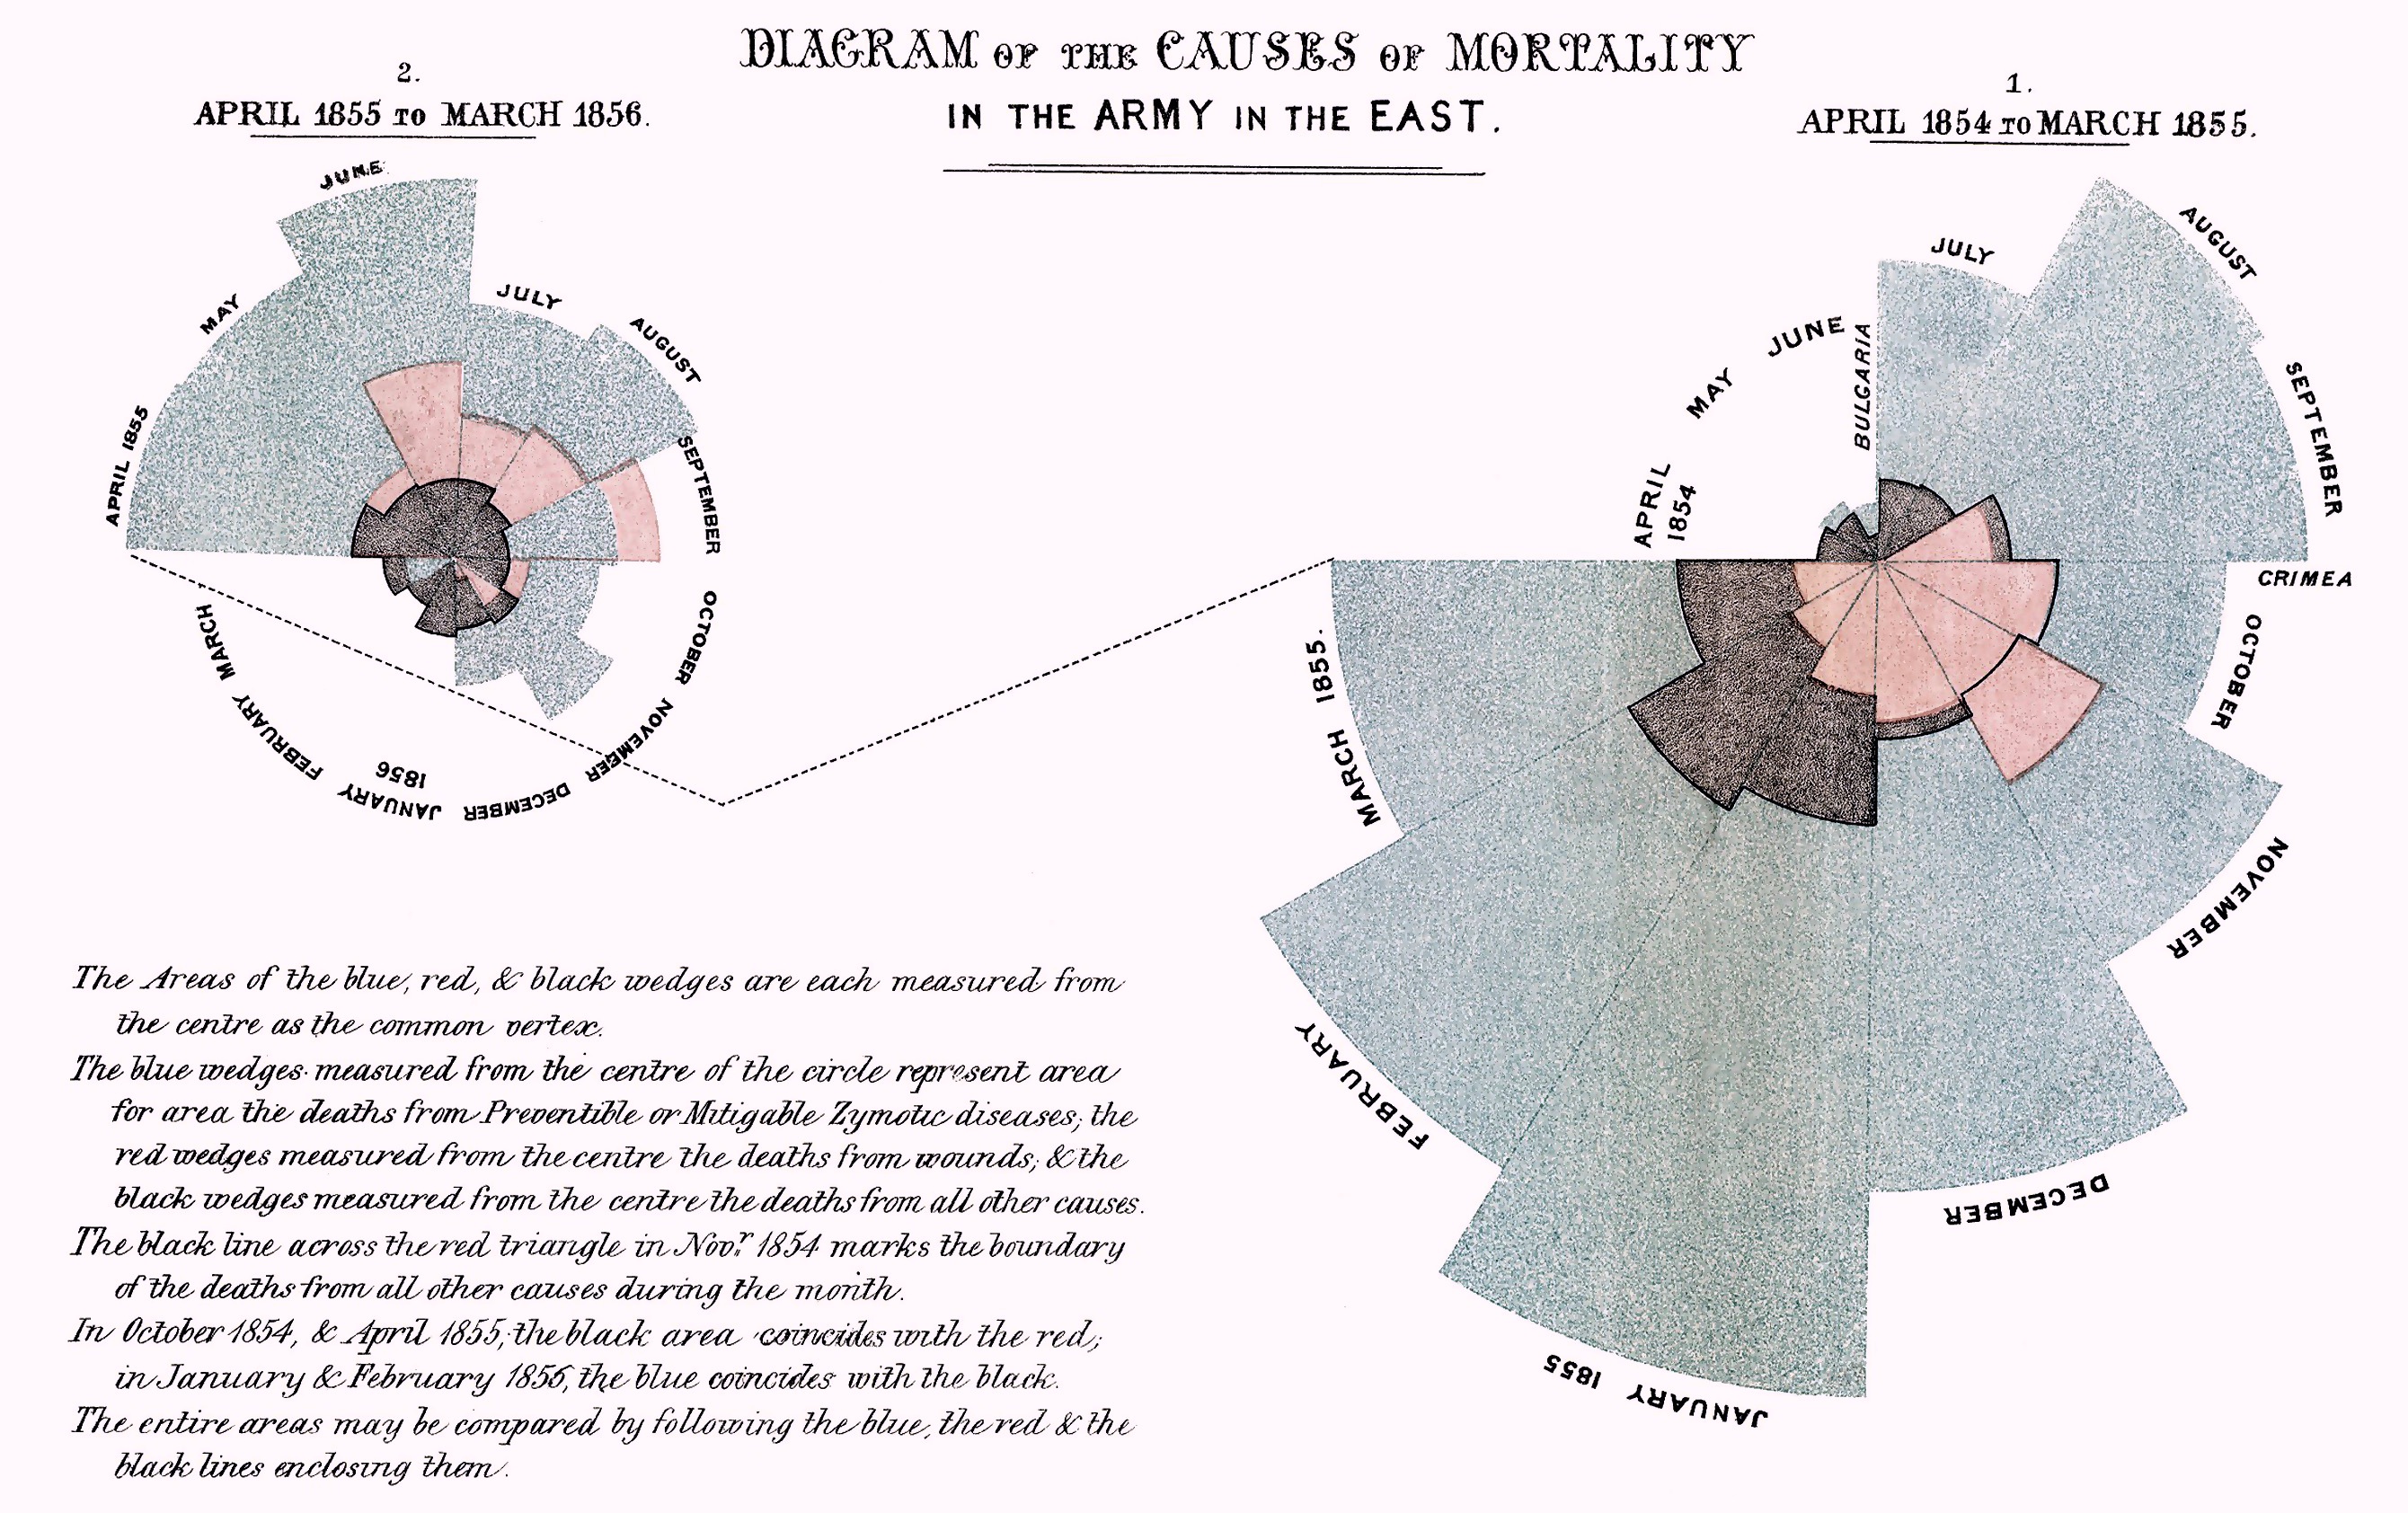 南丁格爾設計的圓餅圖又叫南丁格爾玫瑰圖，她利用這個圖表來比較兩個年度的死亡人數與其原因的概略比例